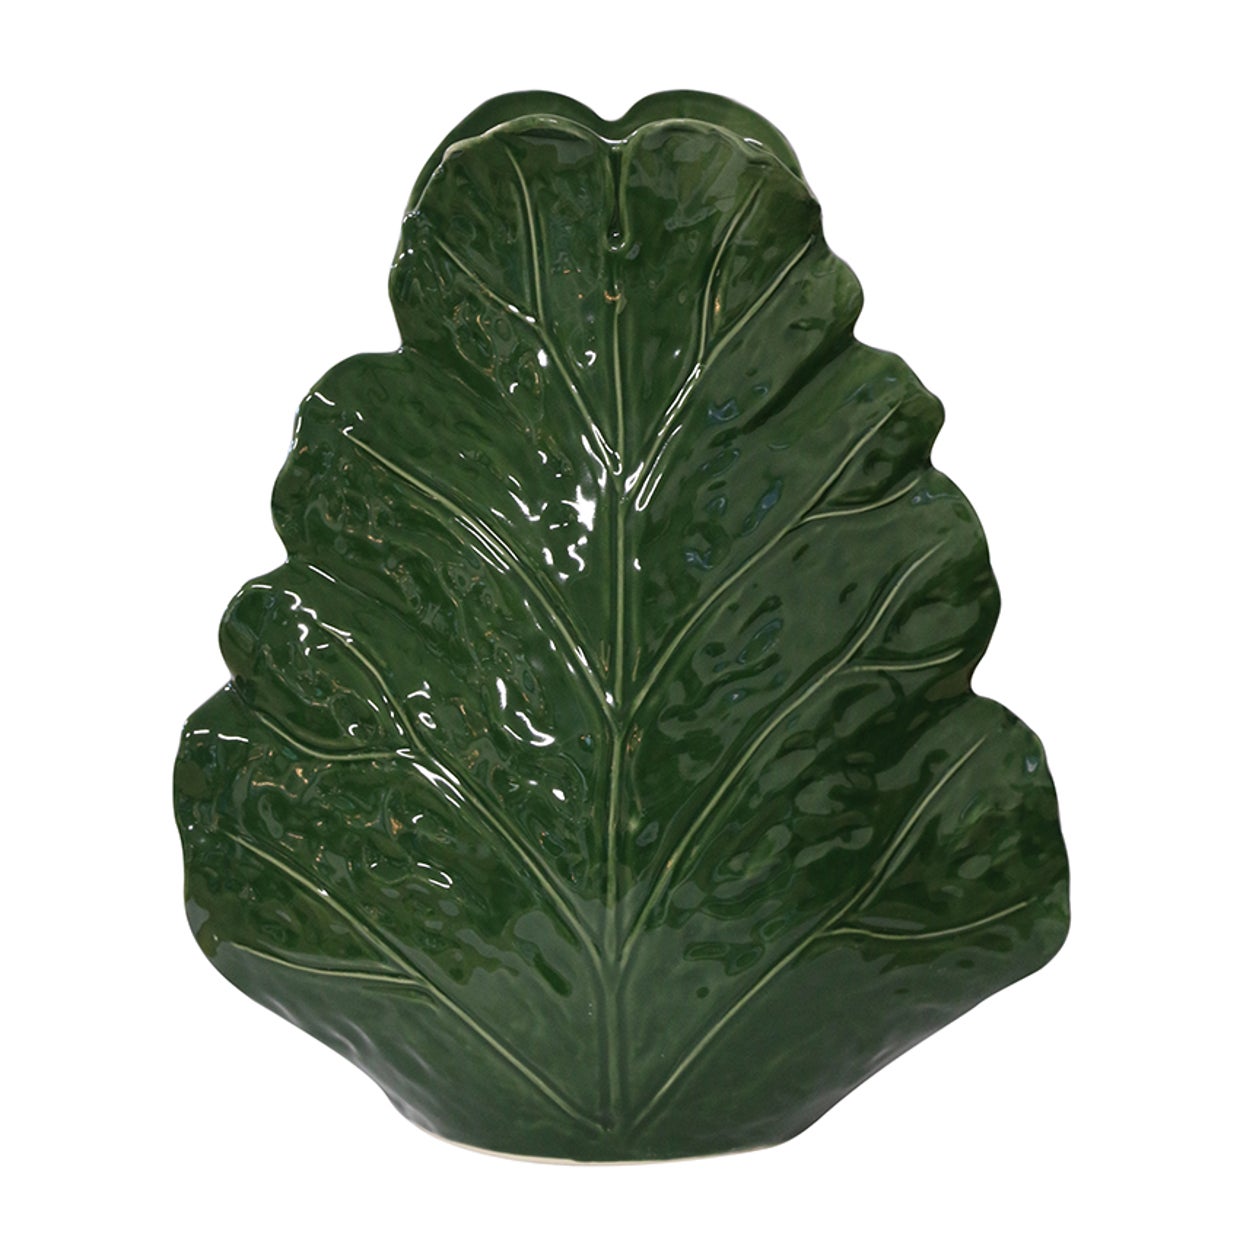 Large Sculptured Leaf Vase